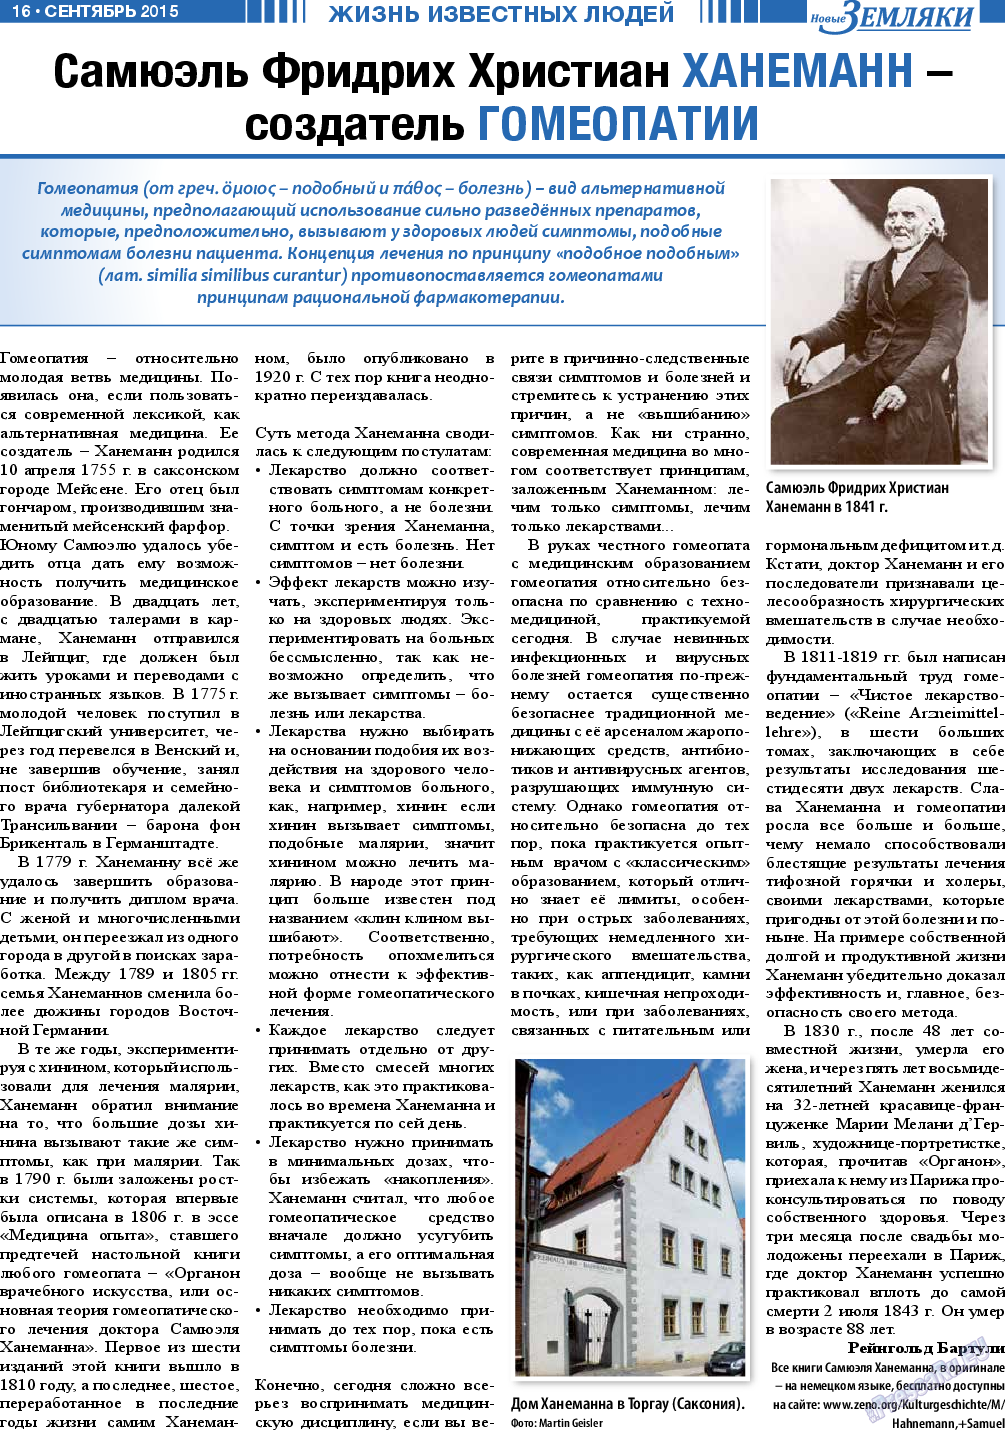 Новые Земляки, газета. 2015 №9 стр.16